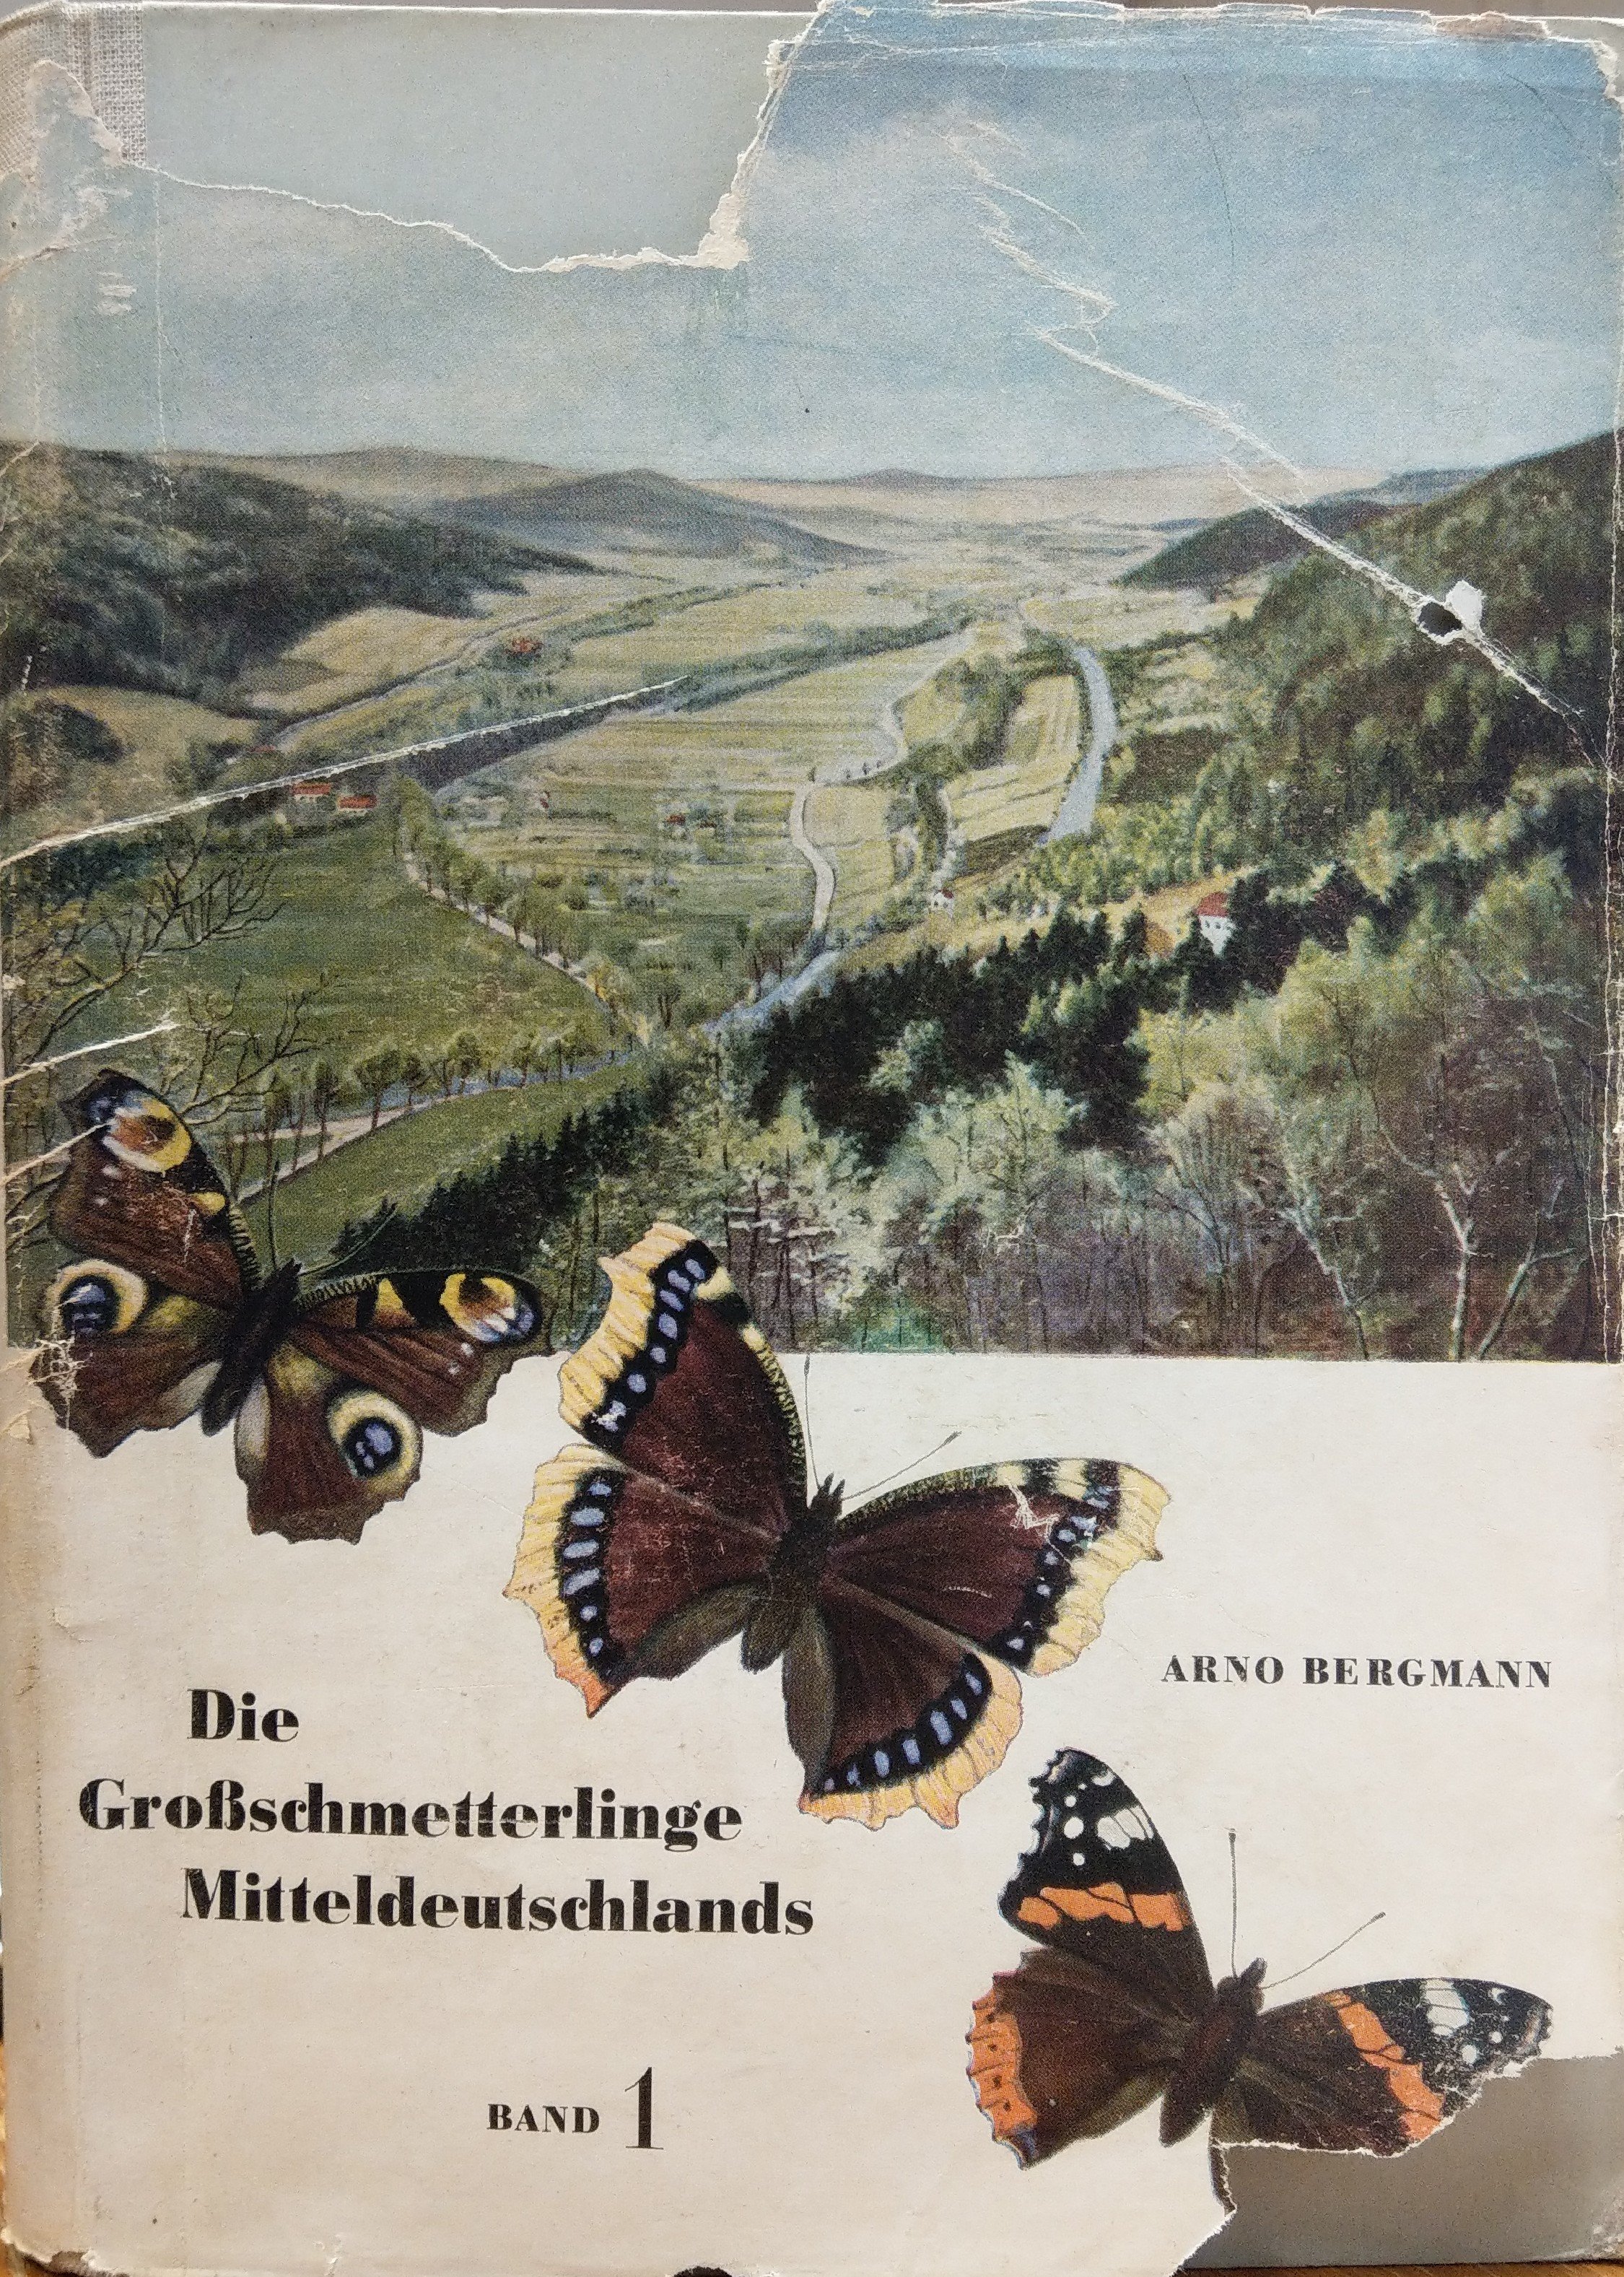 Arno Bergmann: Die Großschmetterlinge Mitteldeutschlands. Band 1. Die Natur Mitteldeutschlands und ihre Schmetterlingsgesellschaften. (Rippl-Rónai Múzeum CC BY-NC-ND)